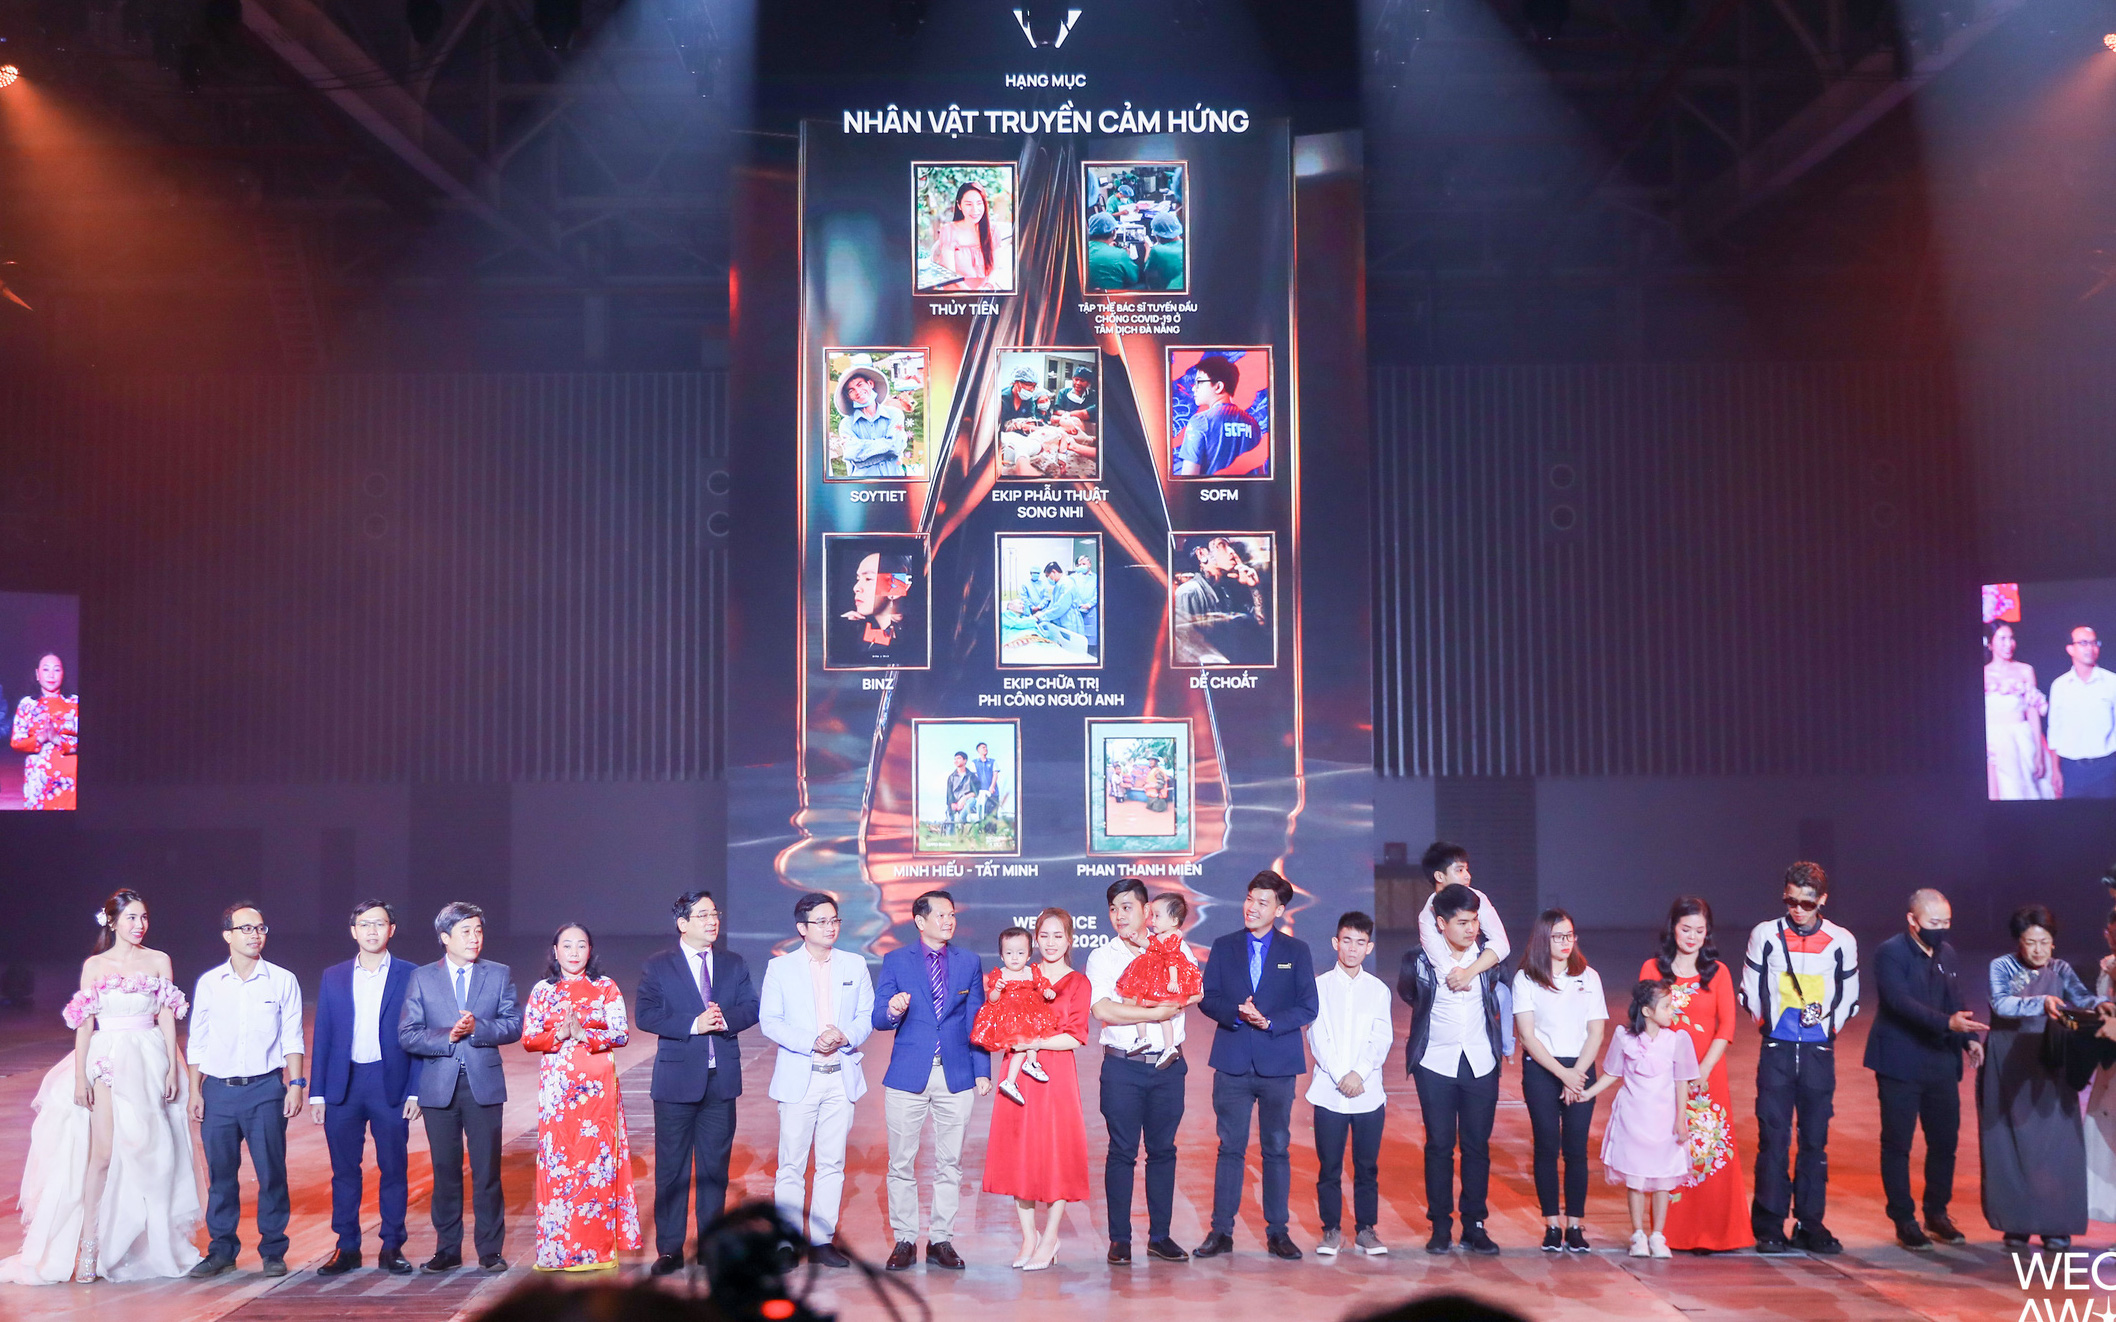 Gala WeChoice Awards 2020: Đêm tôn vinh những điều diệu kỳ Việt Nam!